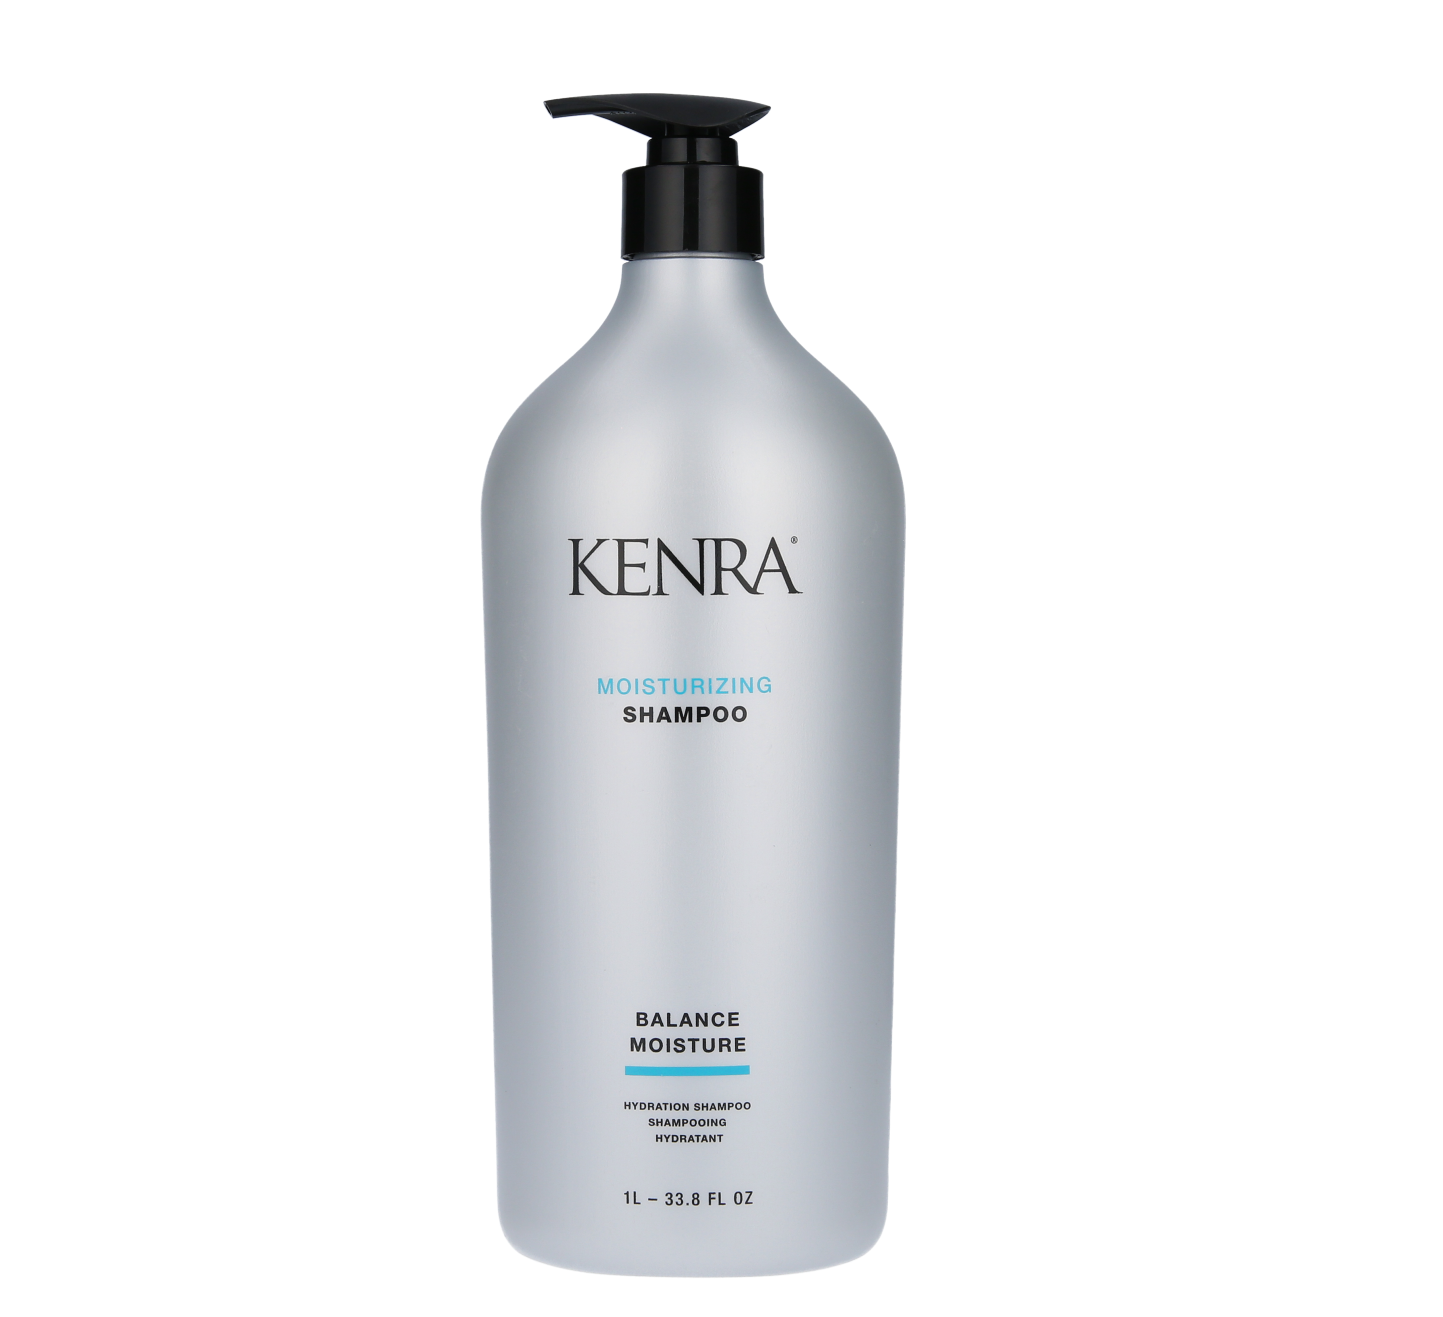 Kenra Professional Moisturizing Shampoo, 33.8 Oz. - $36.00